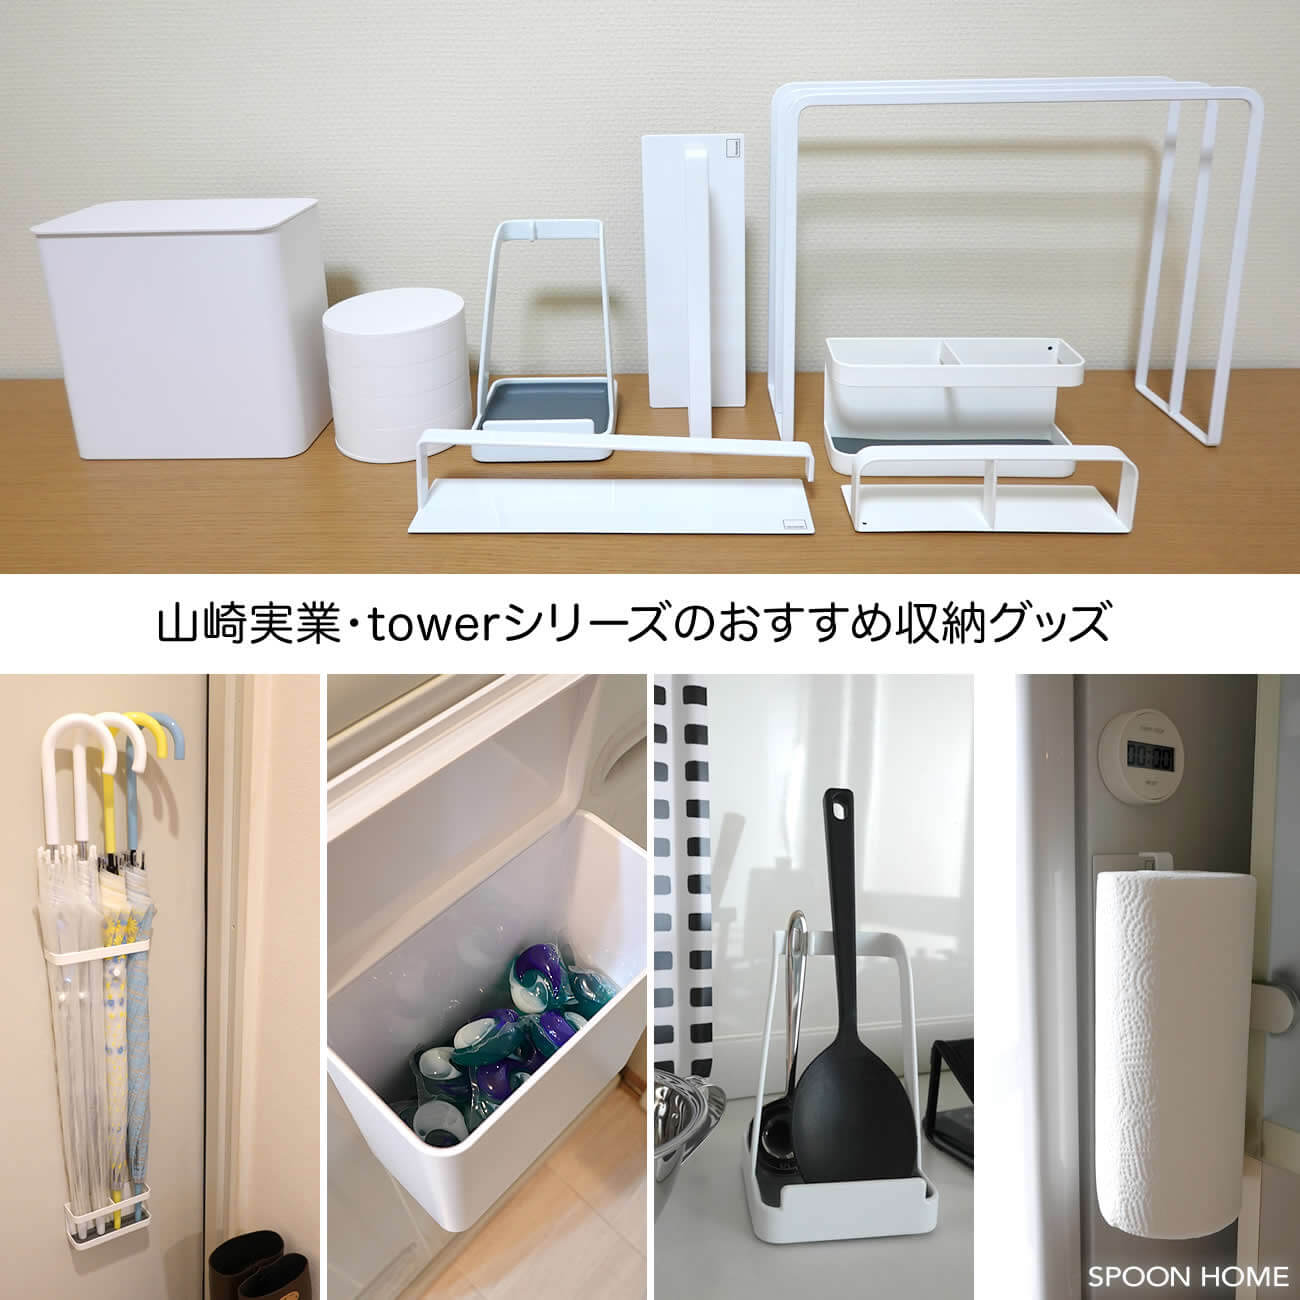 山崎実業・towerシリーズの収納グッズのブログ画像